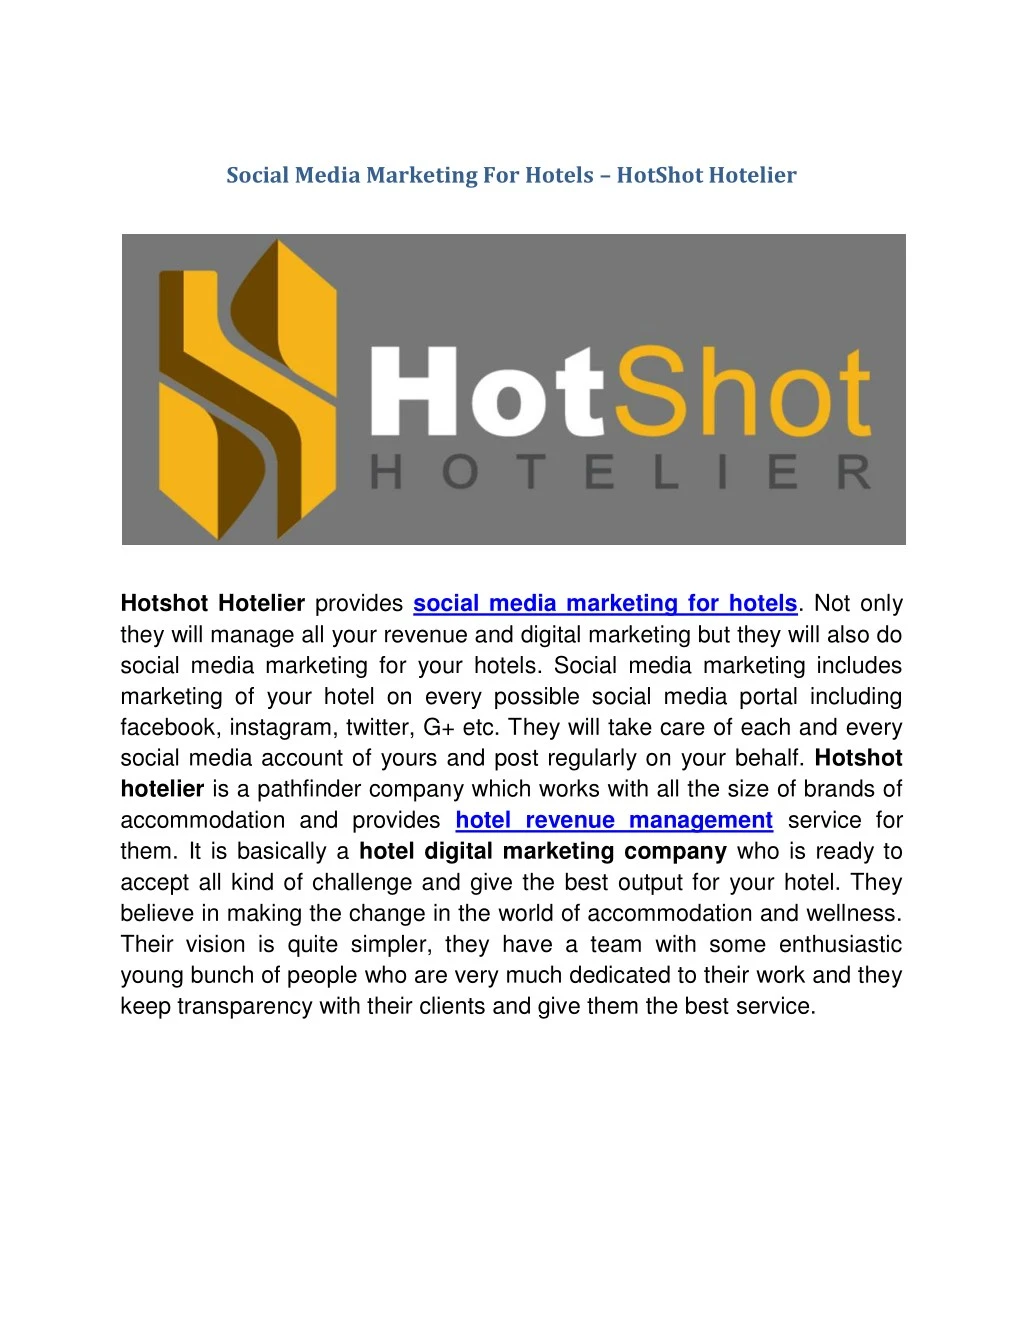 social media marketing for hotels hotshot hotelier